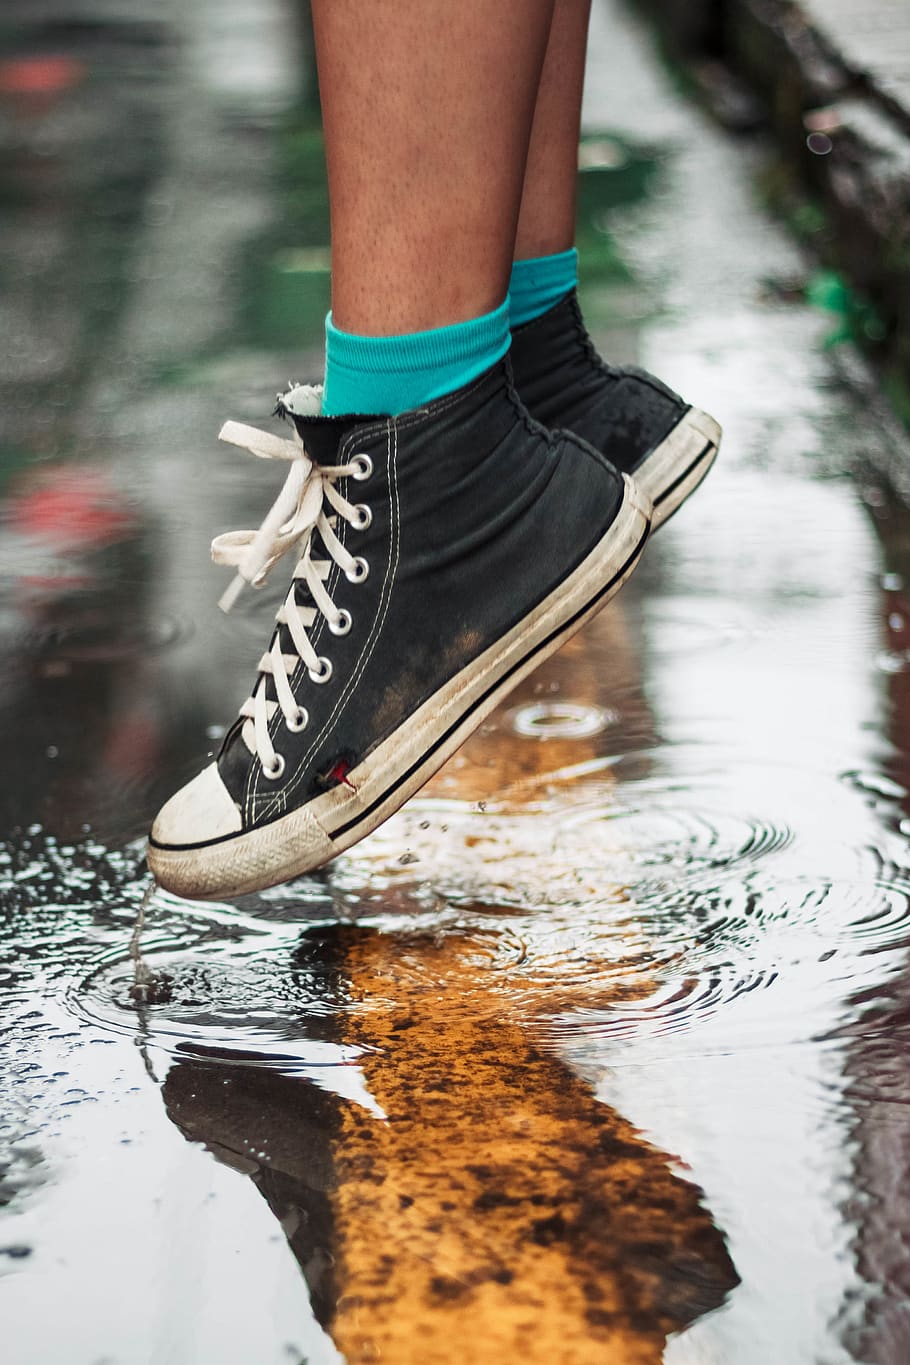 person wearing black high-top sneakers on wet floor, footwear, HD wallpaper